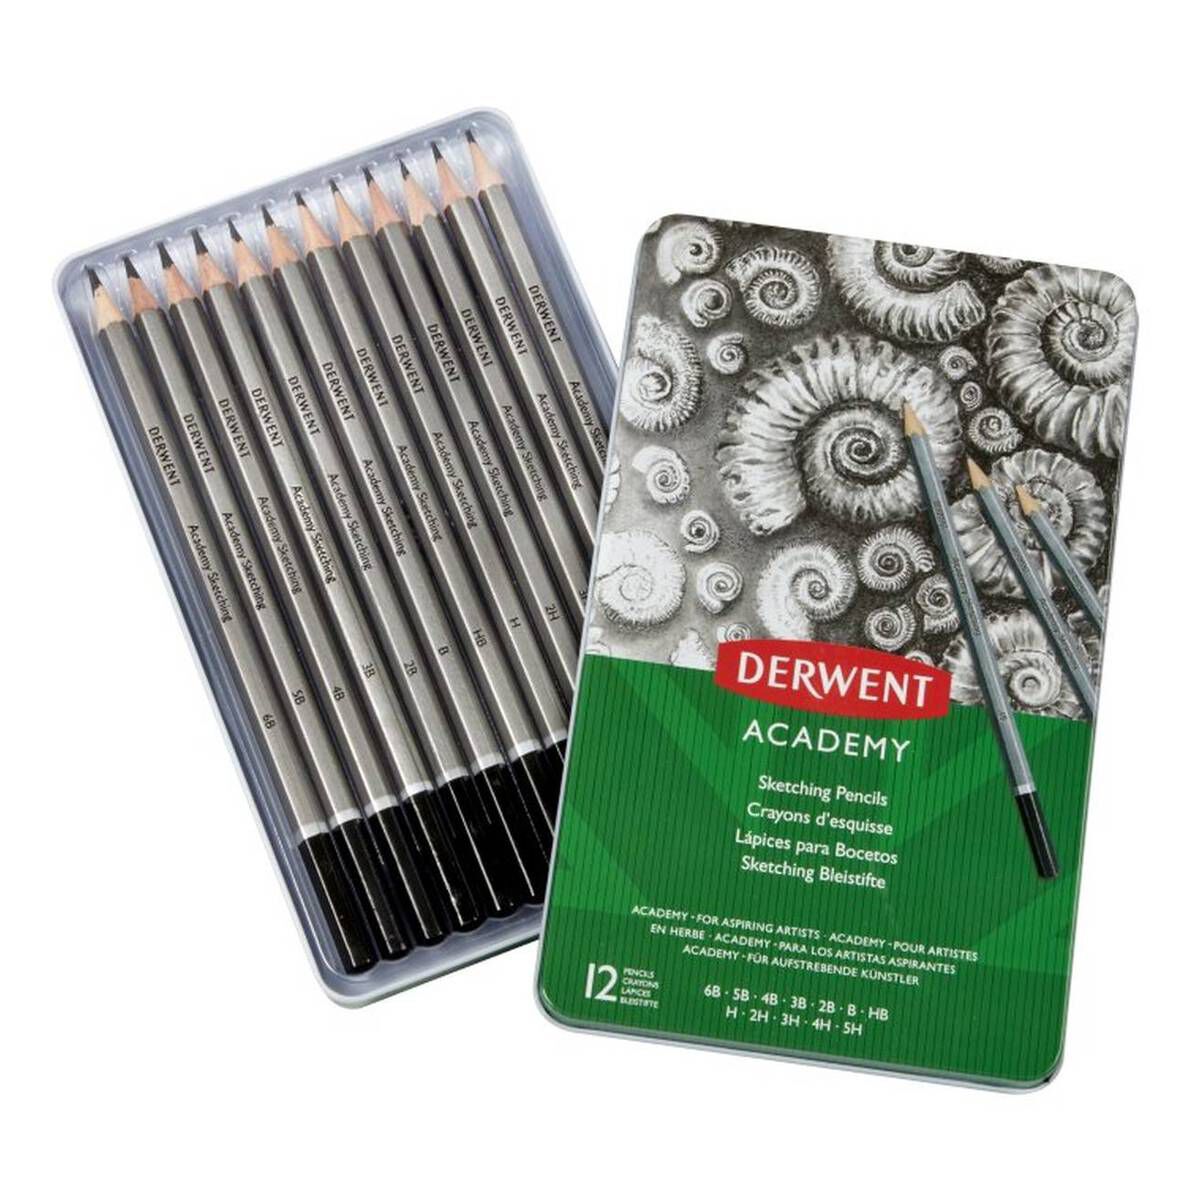 Derwent Academy Sketching Pencils 12 Pack Hobbycraft